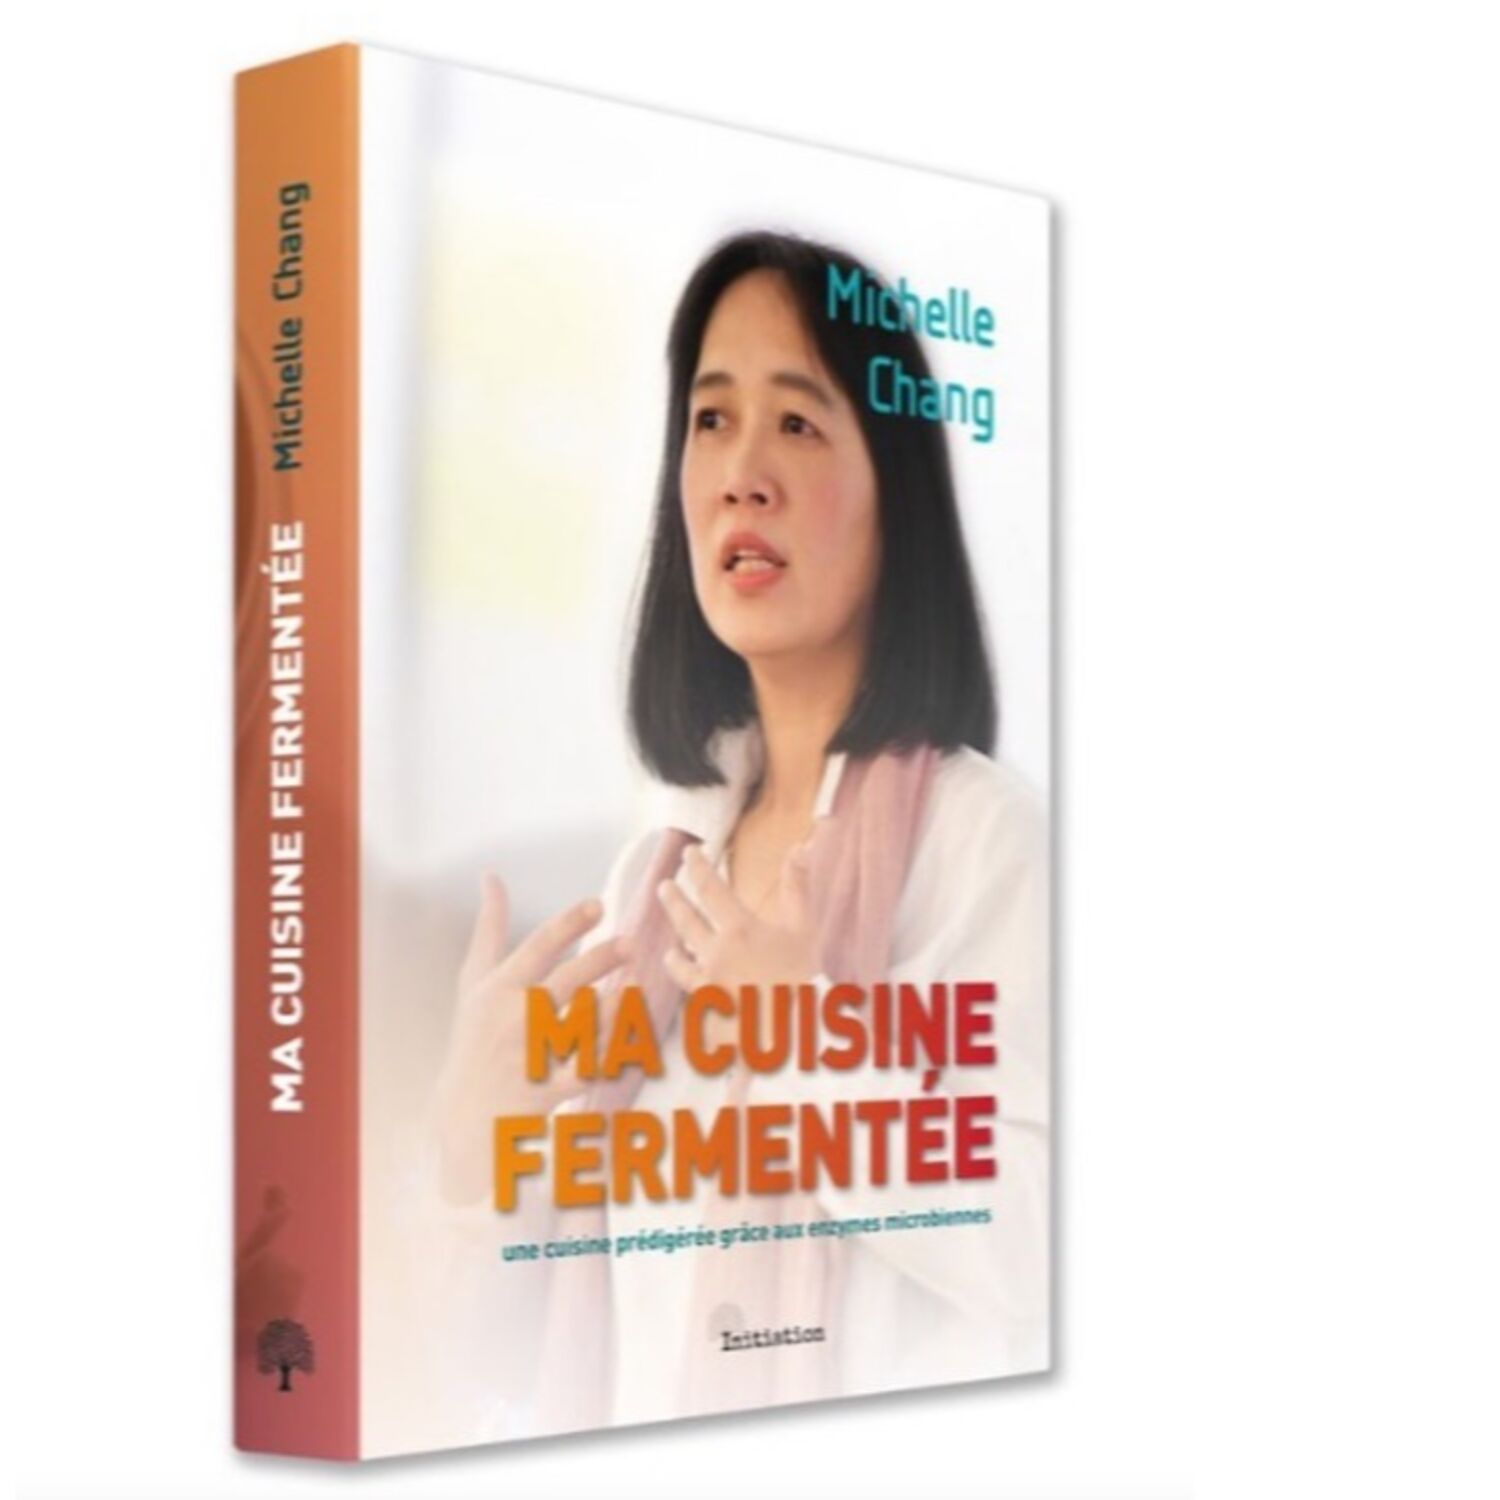 Ma cuisine fermentée : le 1er livre de Michelle CHANG, cheffe du restaurant "la 5ème saveur" à Pont-